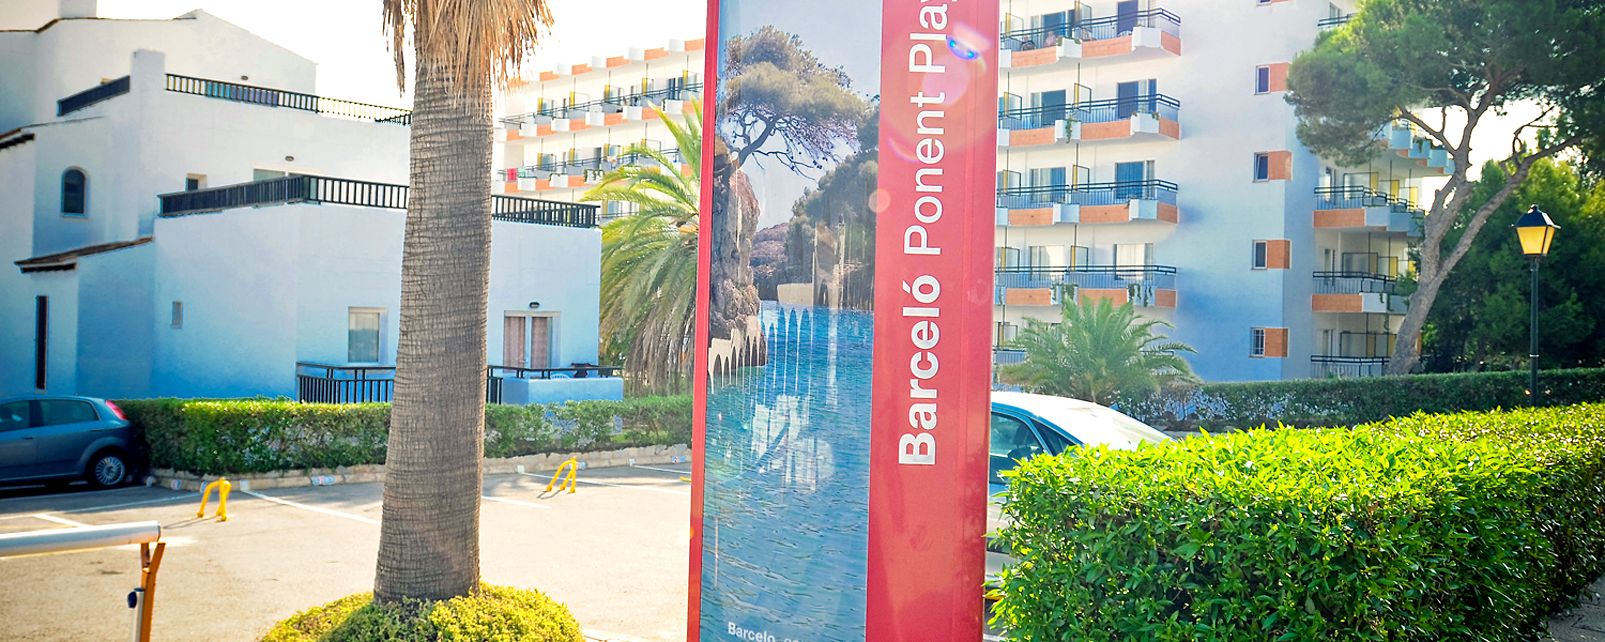 Hôtel Barcelo Ponent Playa